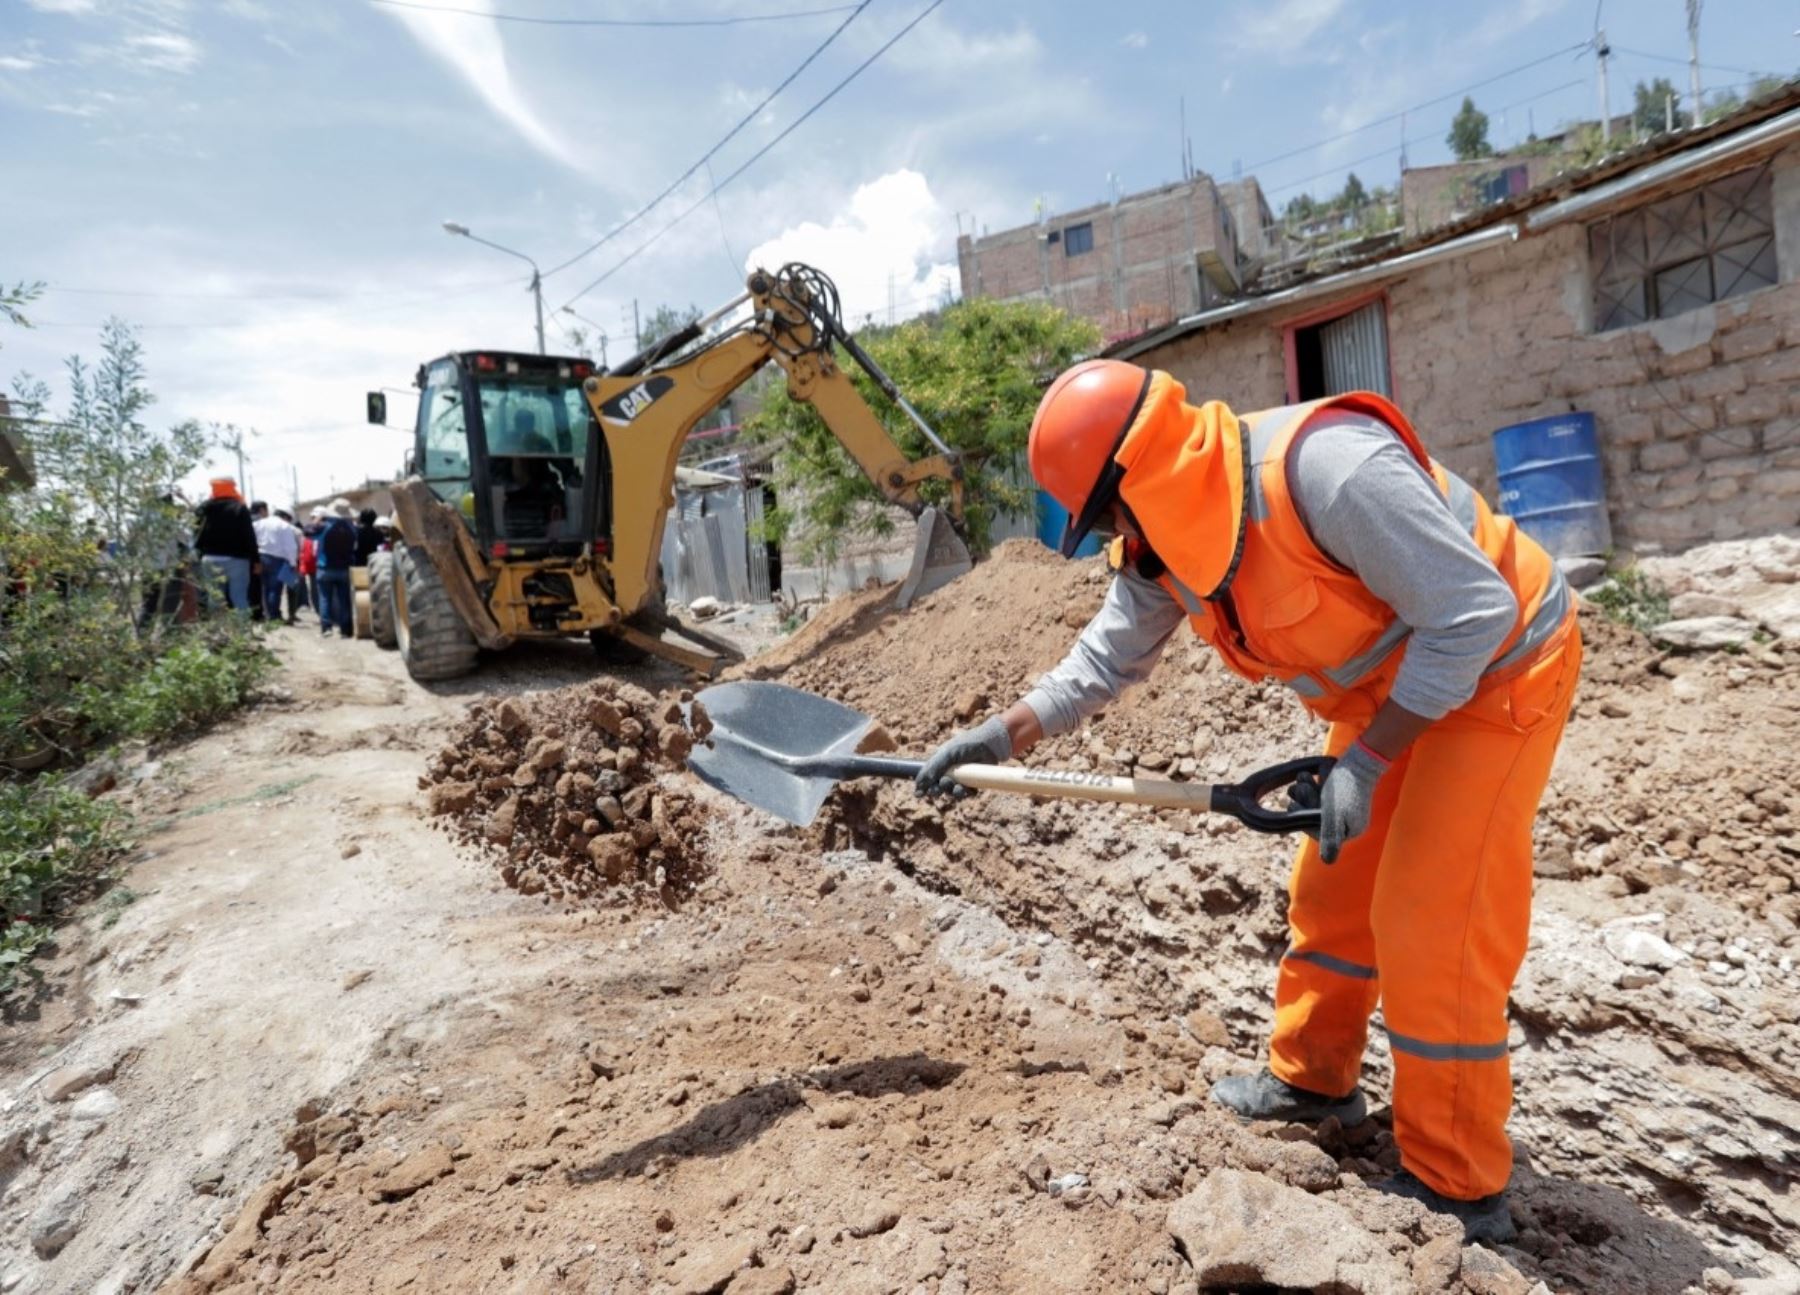 Diversas municipalidades de Junín recibieron S/ 44 millones para ejecutar obras de infraestructura urbana que beneficiarán a más de 52,000 personas, afirmó el Ministerio de Vivienda.